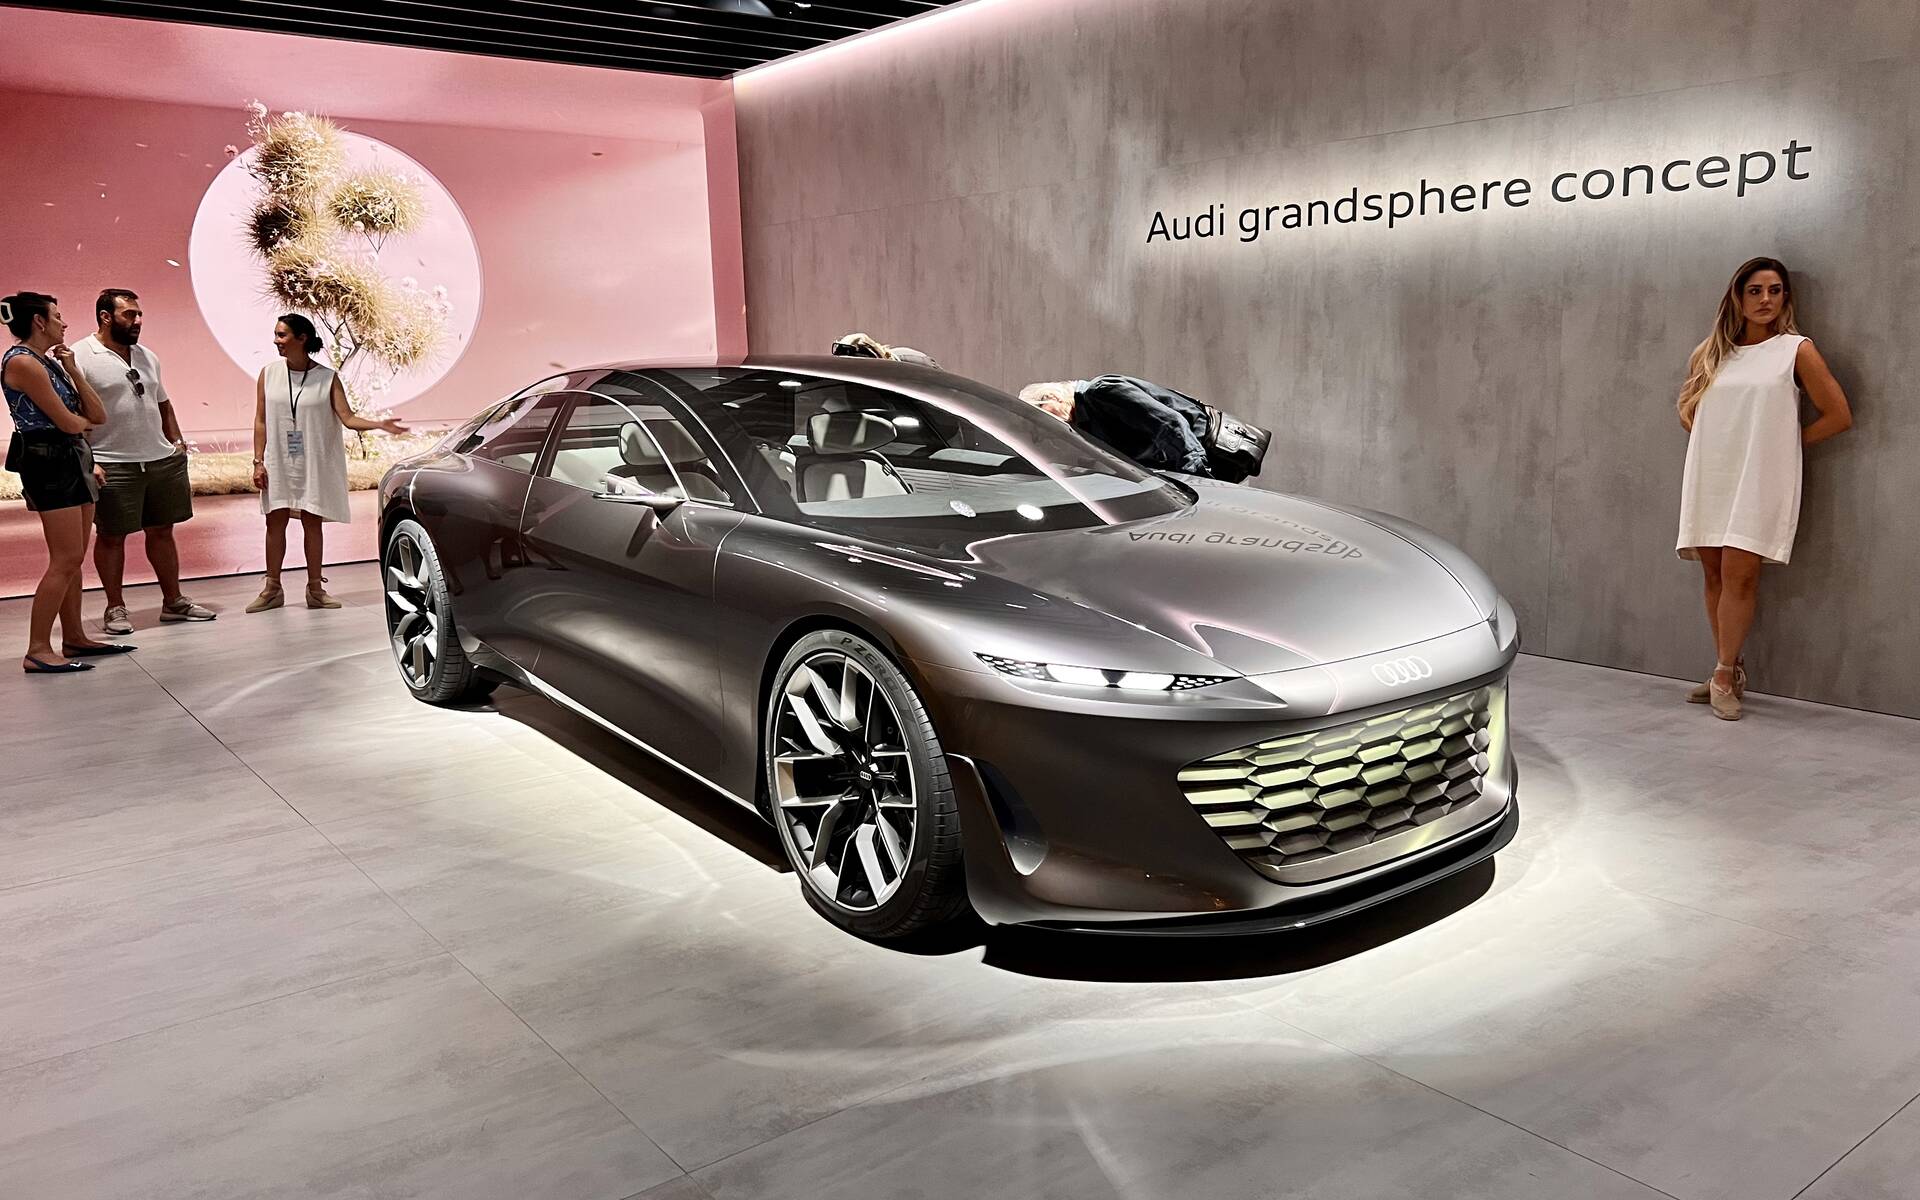 Route de nuit - Musée Audi : hommage aux pionniers de l'aérodynamique